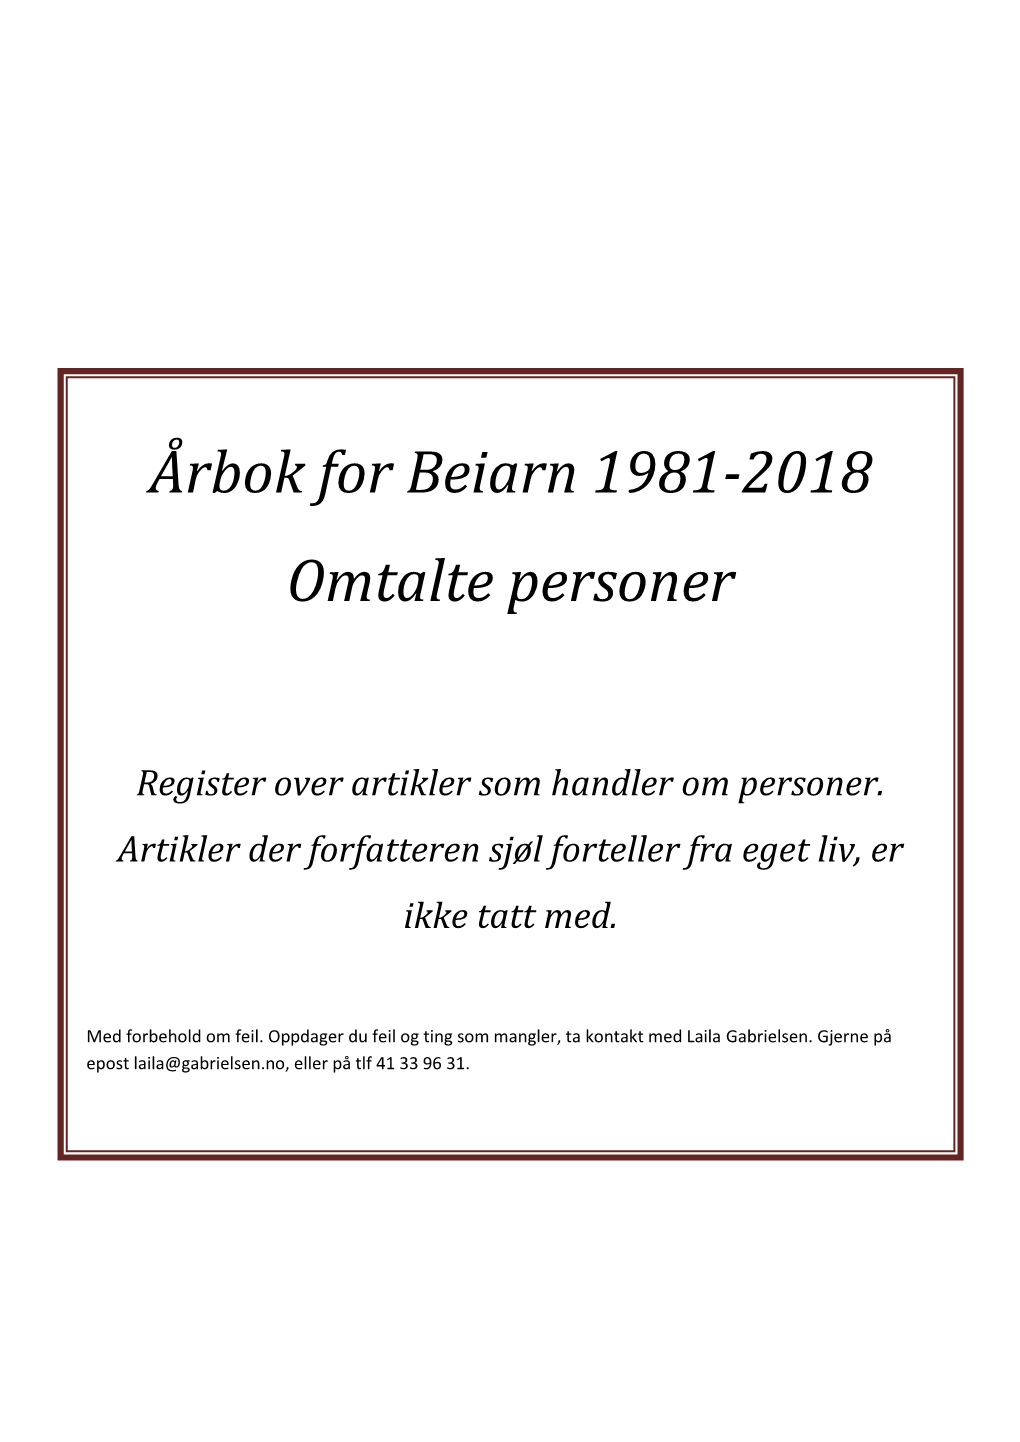 Årbok for Beiarn 1981-2018 Omtalte Personer